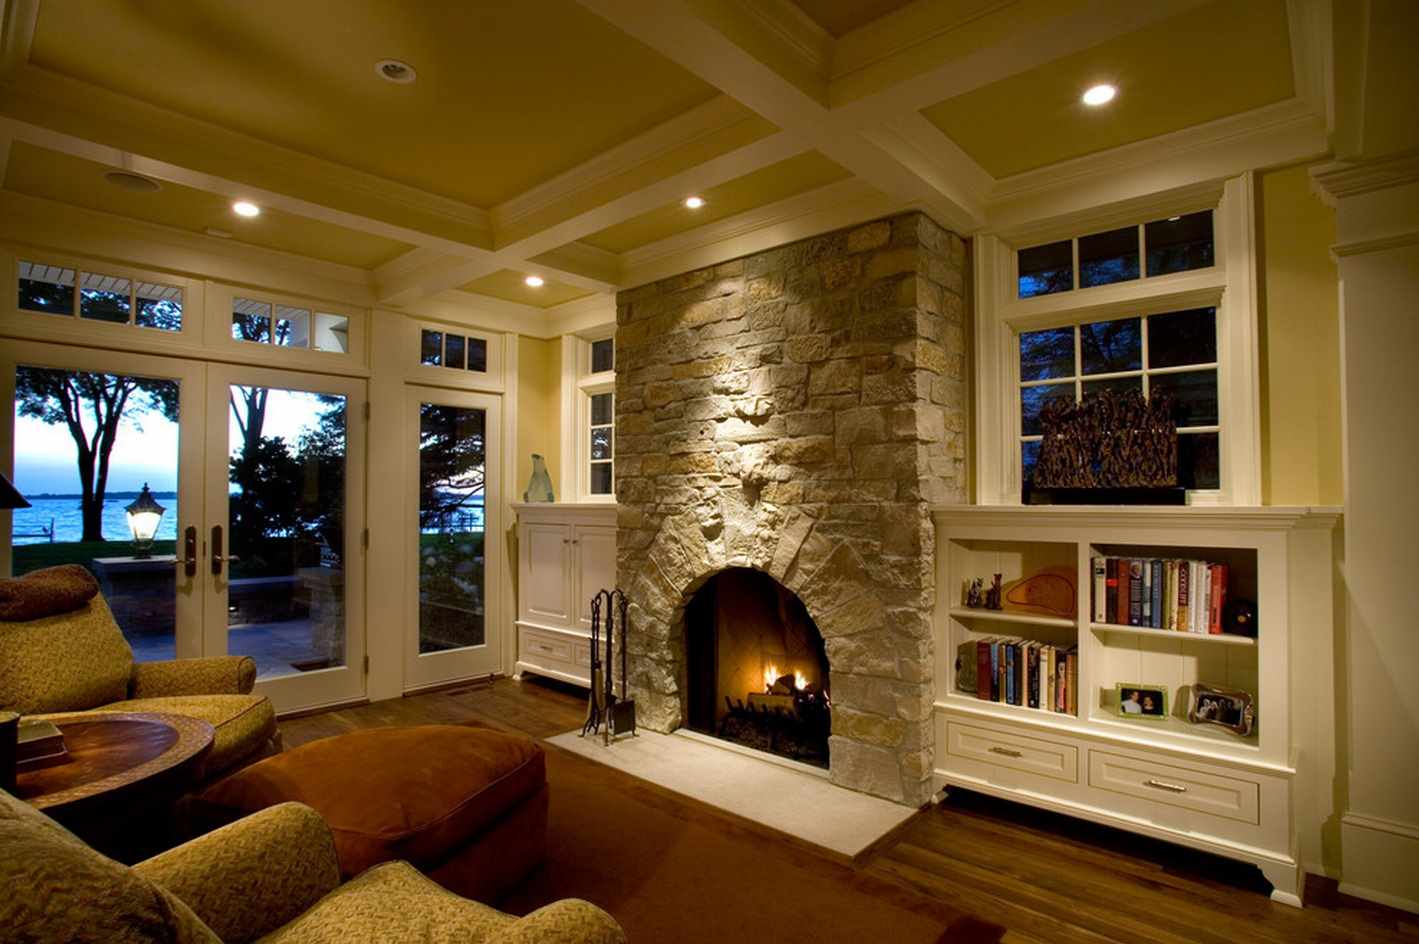 ang ideya ng paggamit ng isang magandang interior room sa loob ng fireplace